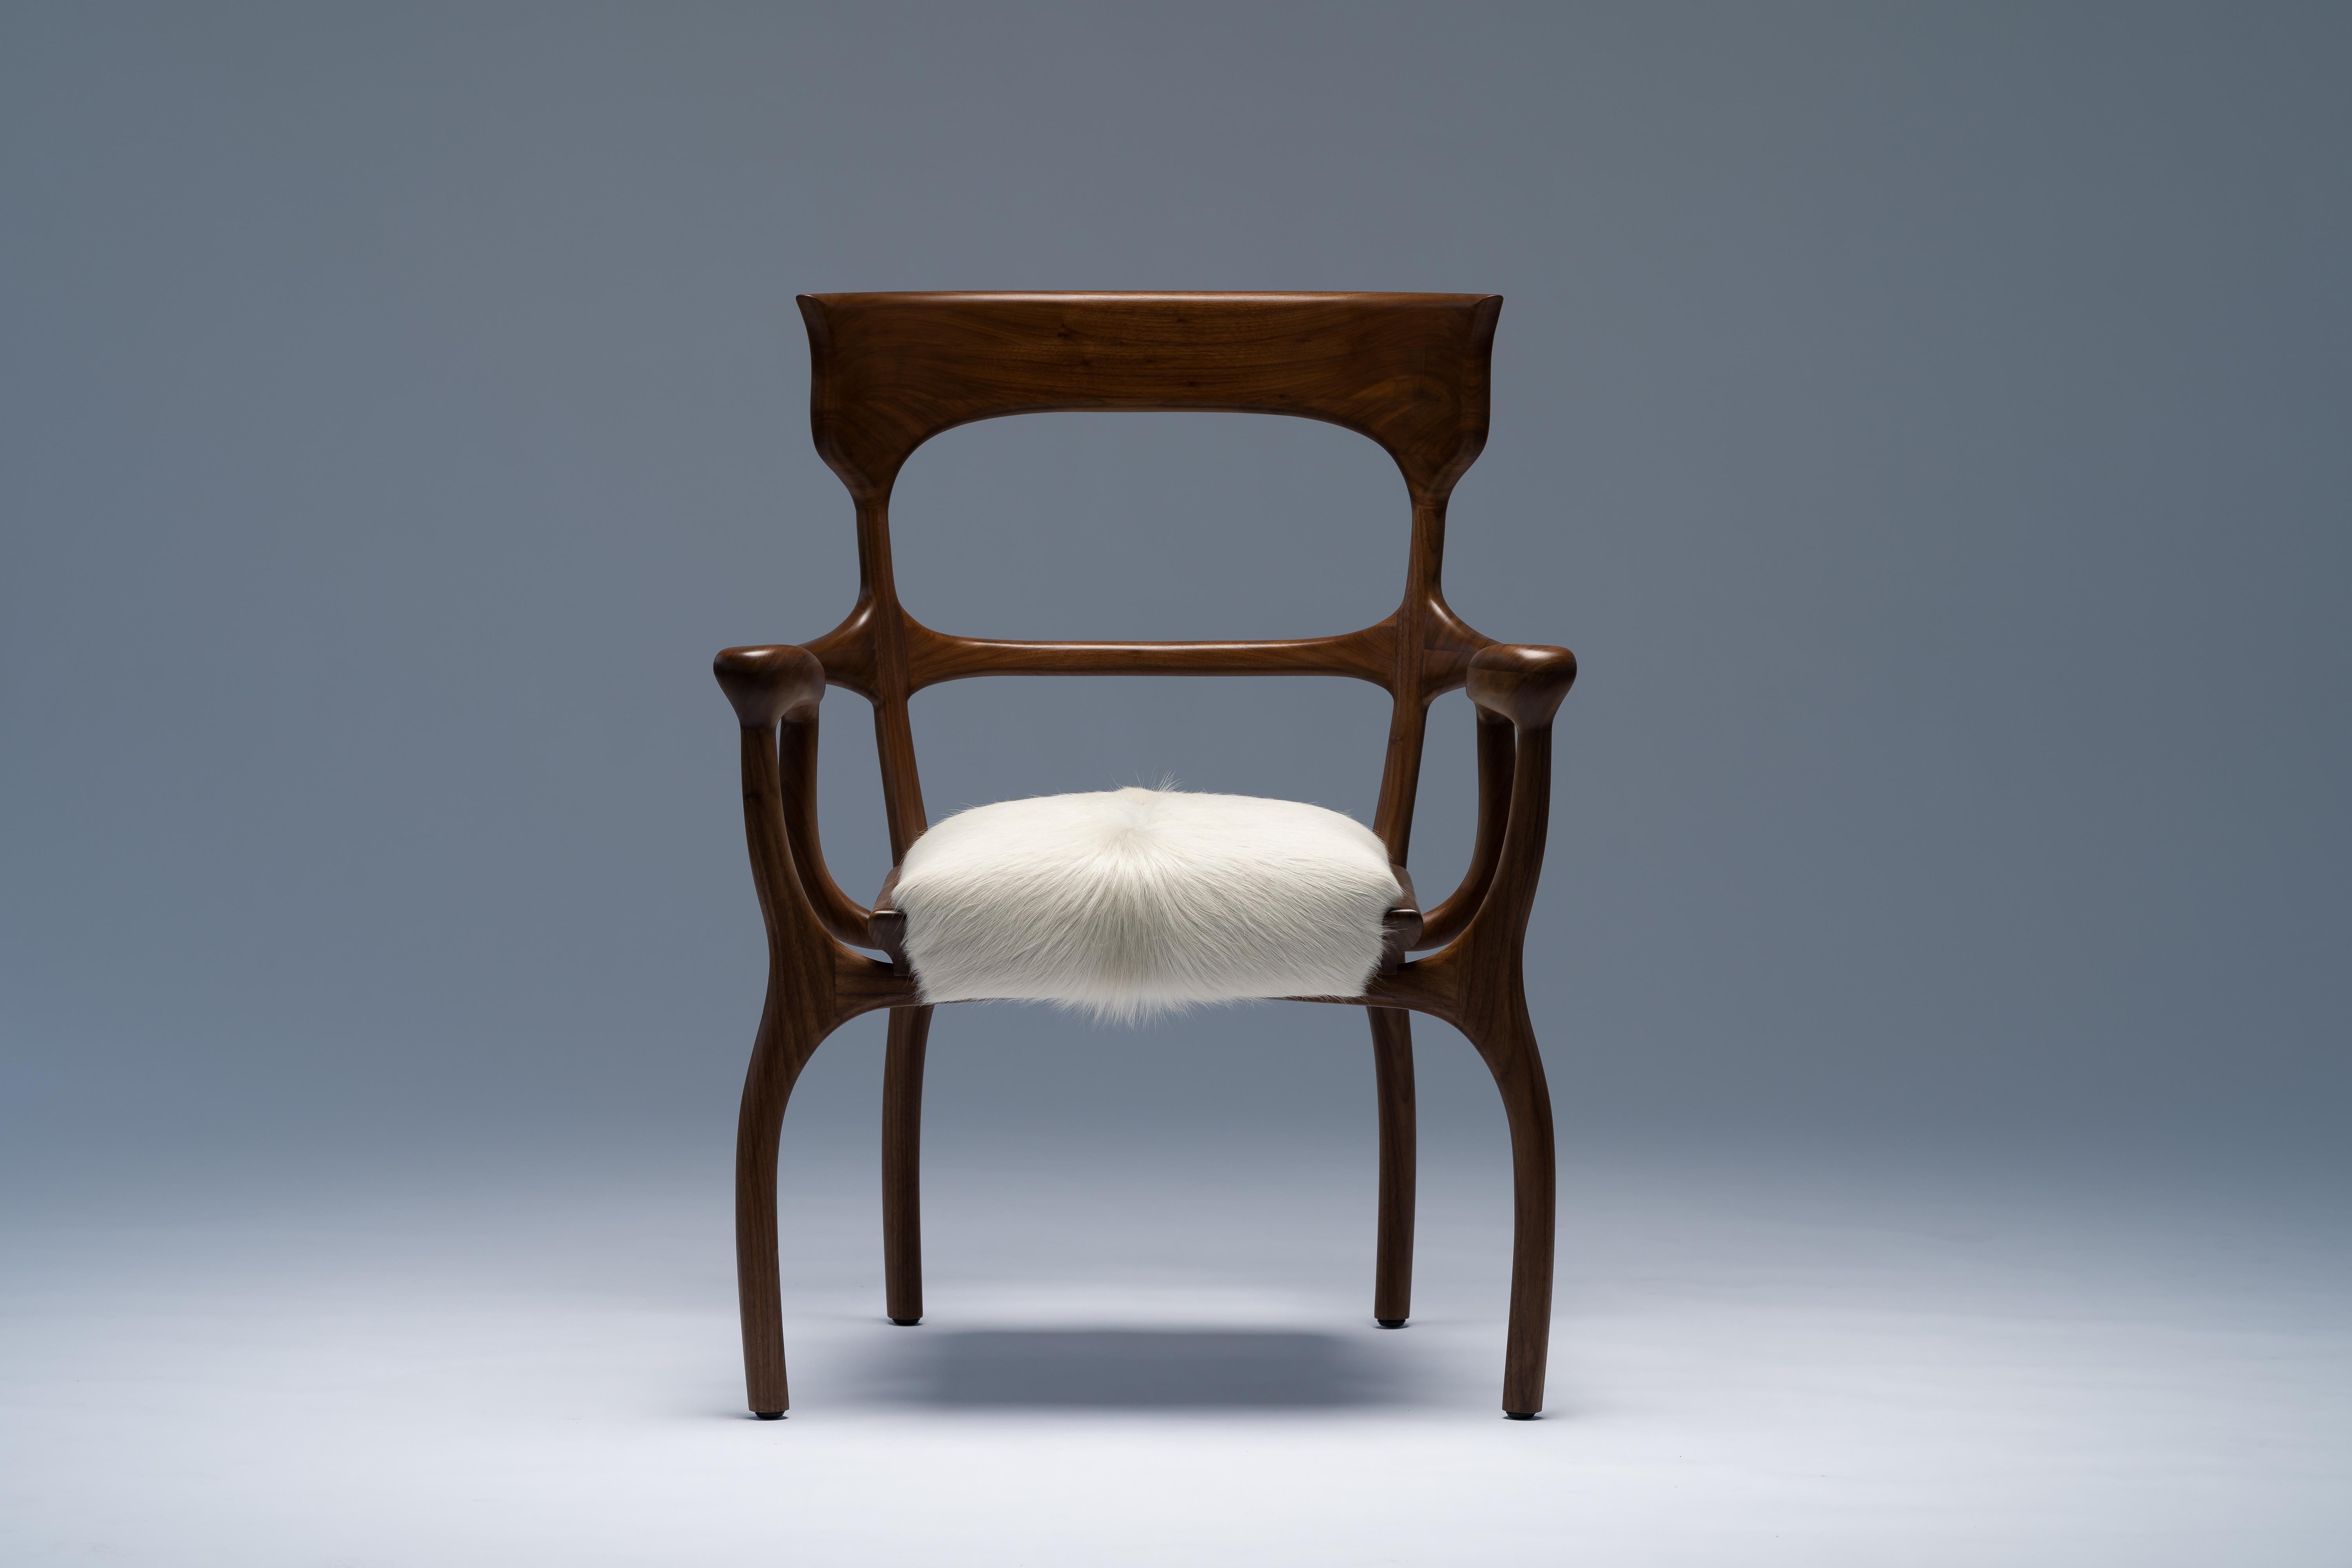 MARTA Stuhl von Mandy Graham 

MARTA
M01, Stuhl Sessel
Amerikanischer Nussbaum oder sandgestrahlte Weißeiche, Sitz aus behaartem Rindsleder
Maße: 27